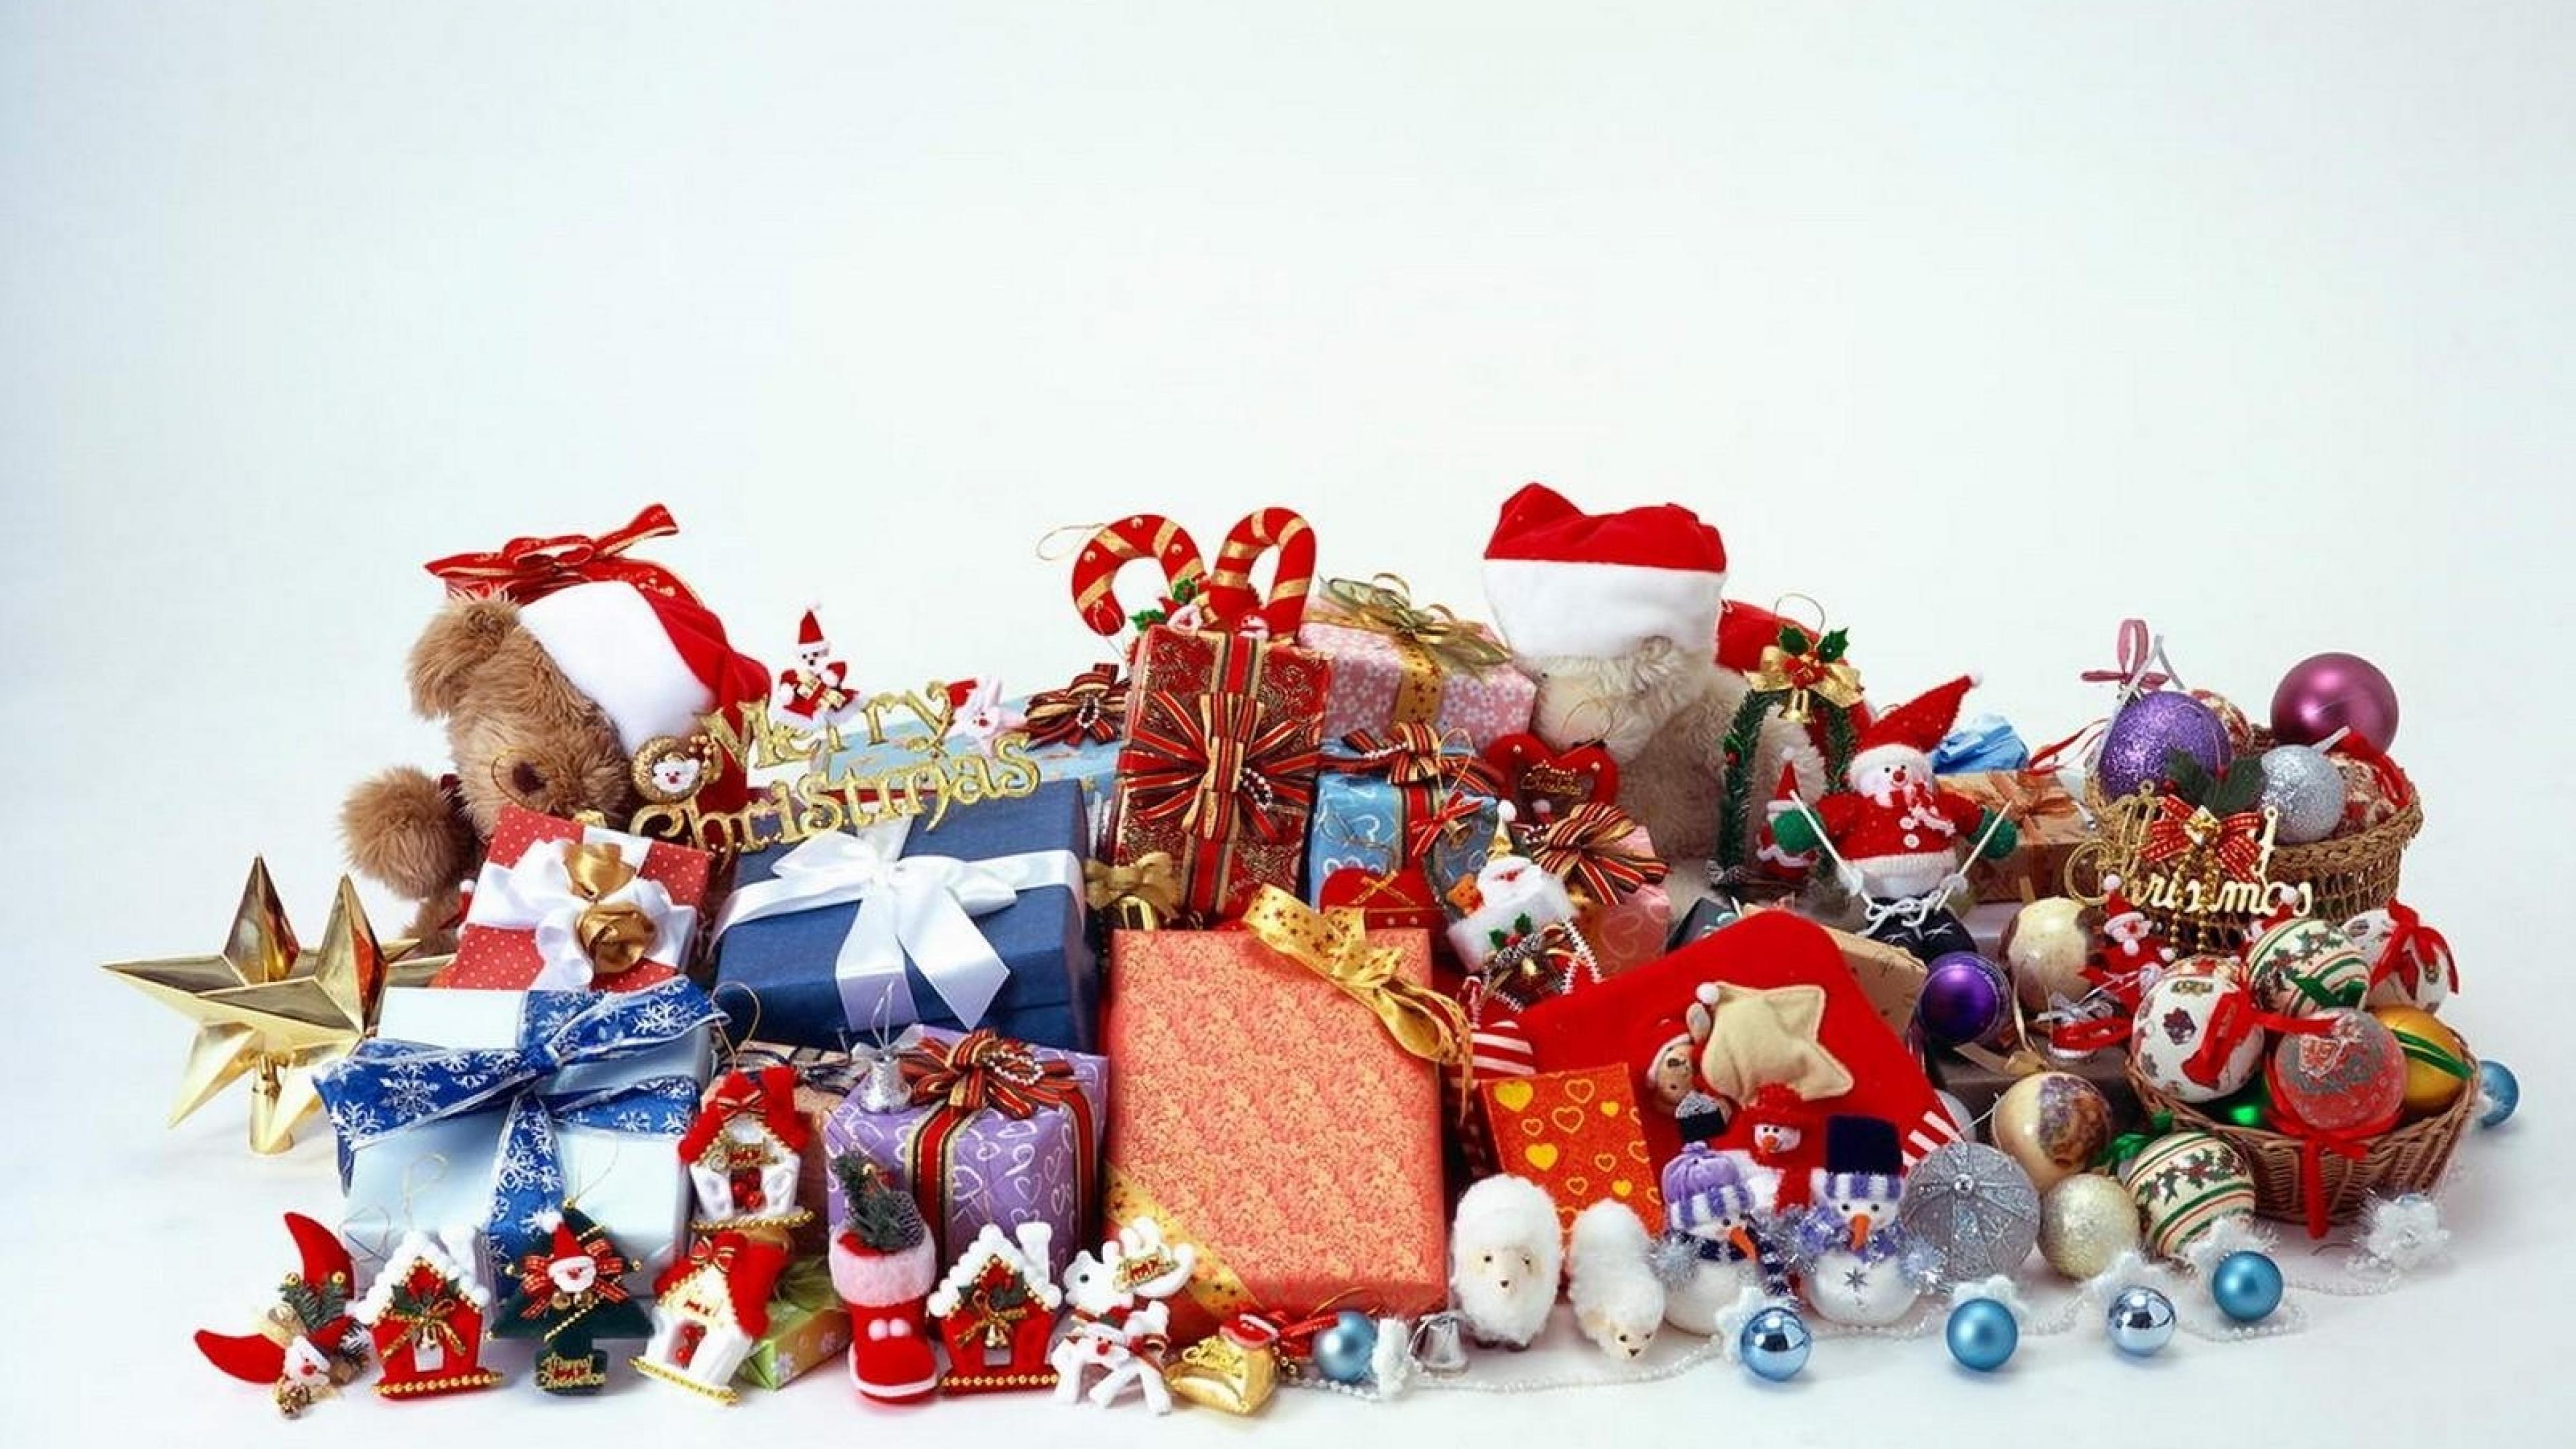 j-christmas-new-toys-christmas-toys-shop-christmas-toys-sold-out-christmas-toys-salvation-army-christmas-toys-stolen-christmas-toys-sale-walmart-christmas-toys-singing-christmas-toys-r-us-chri